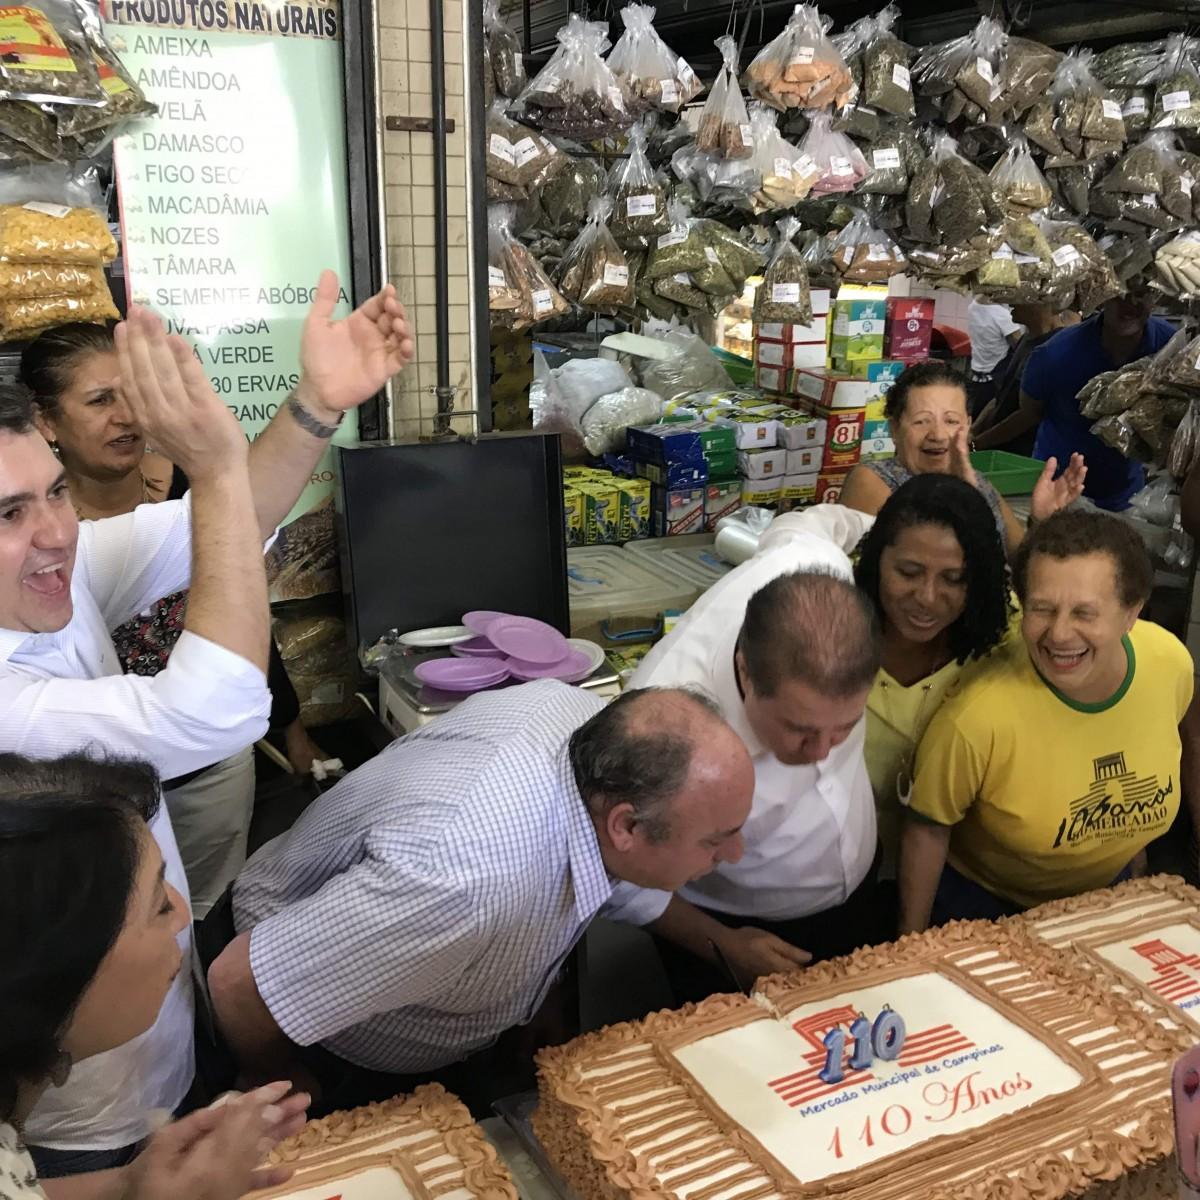 Multidão comemorou 110 anos do Mercadão Municipal (Divulgação)